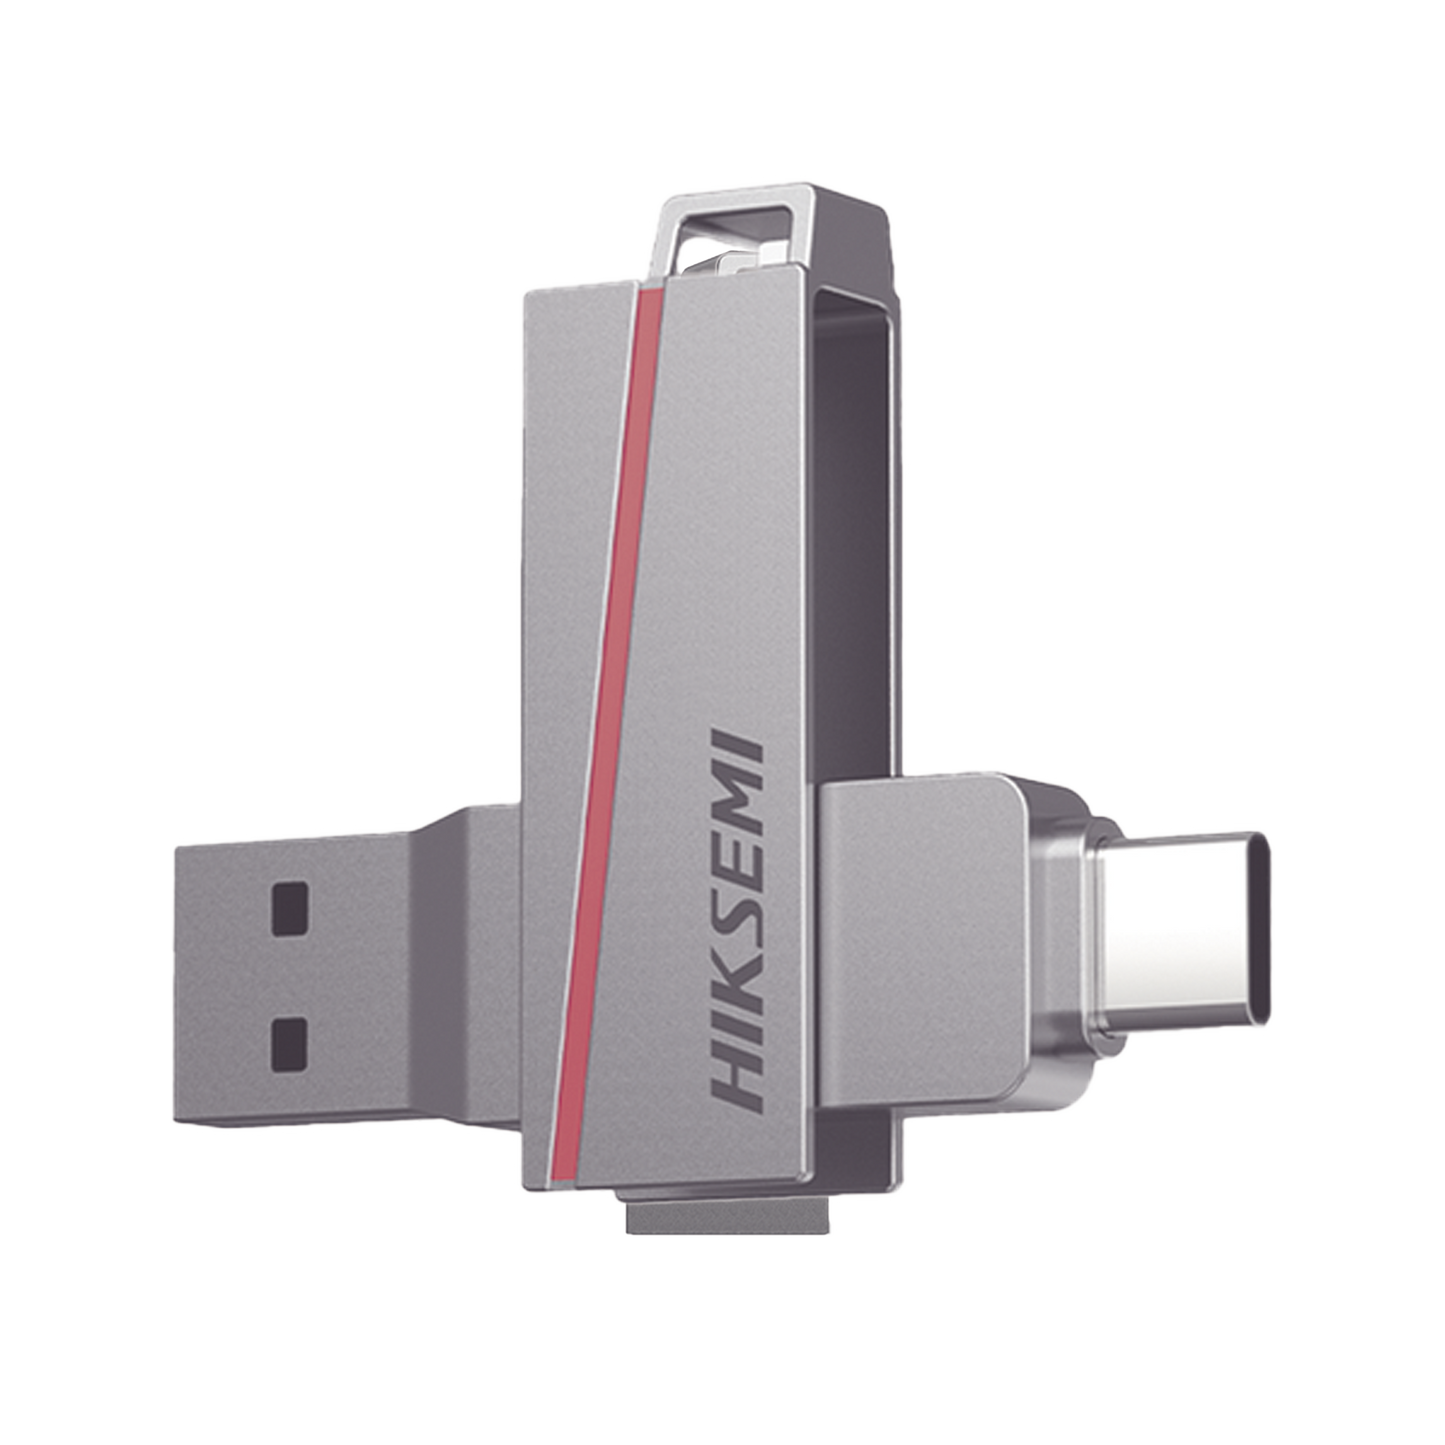 Memoria USB Dual de 256 GB / USB-C y USB-A / Transferencia de Alta Velocidad / Metálica / Compatible con Dispositivos Móviles, Windows, Mac y Linux